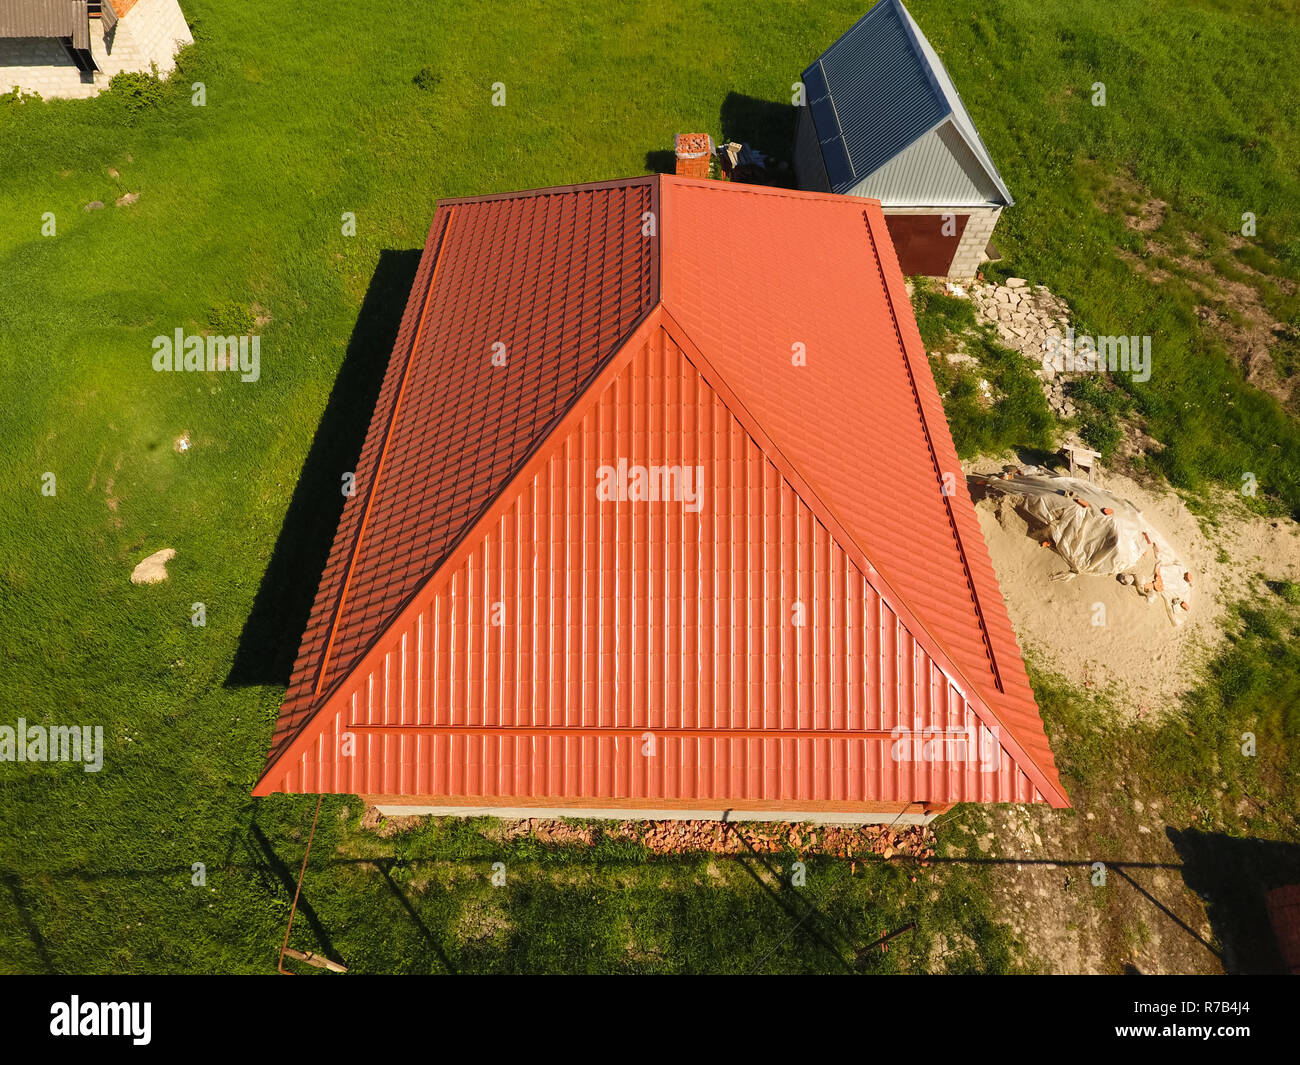 Maison avec un toit orange en métal, vue d'en haut. Profil métallique ondulé peint sur le toit. Banque D'Images